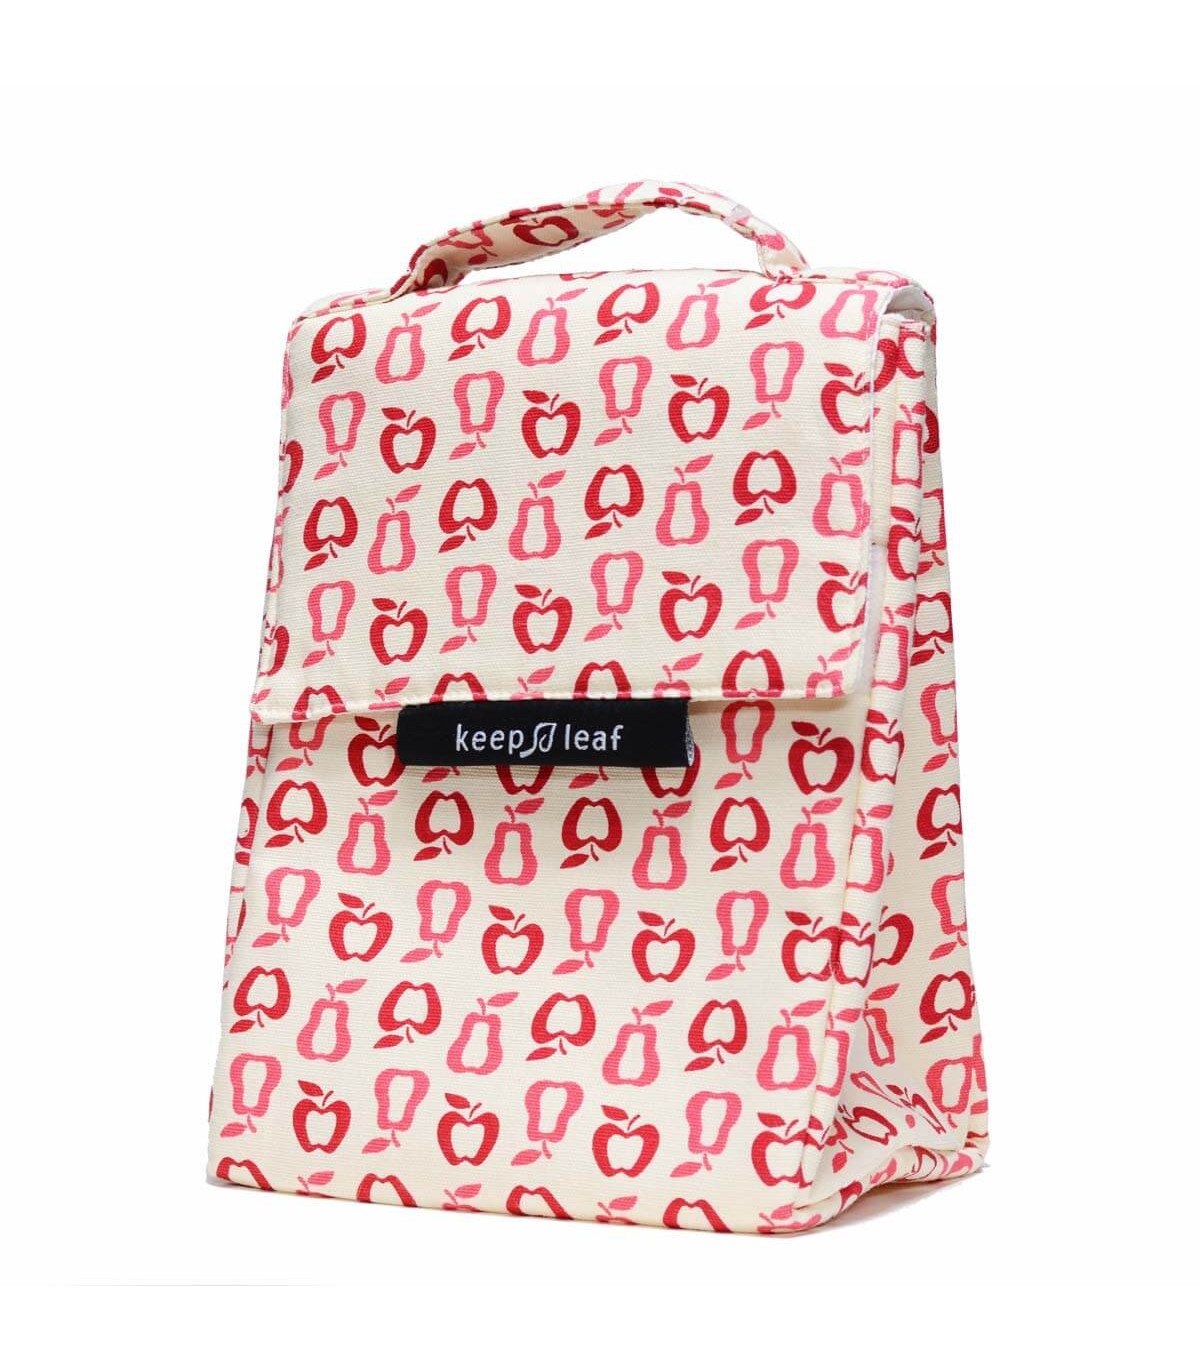 Lunch Bag - Sac Isotherme Design pour emporter Repas au motif Fruits